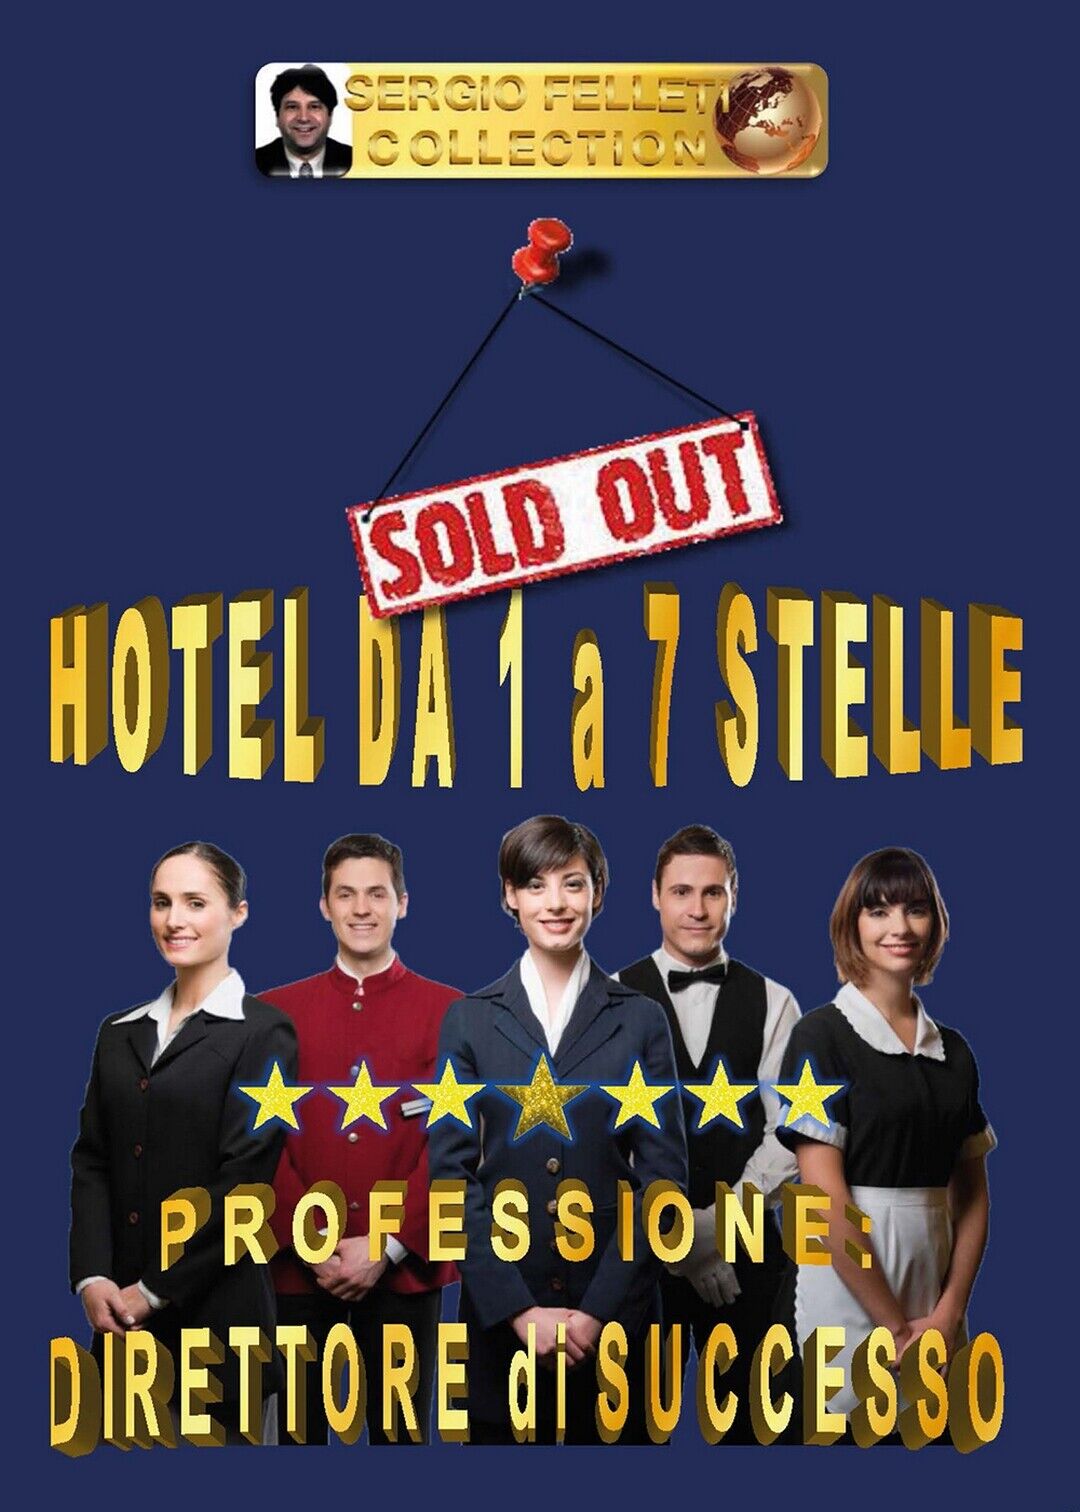 Hotel da 1 a 7 stelle - Professione direttore di successo  di Sergio Felleti libro usato